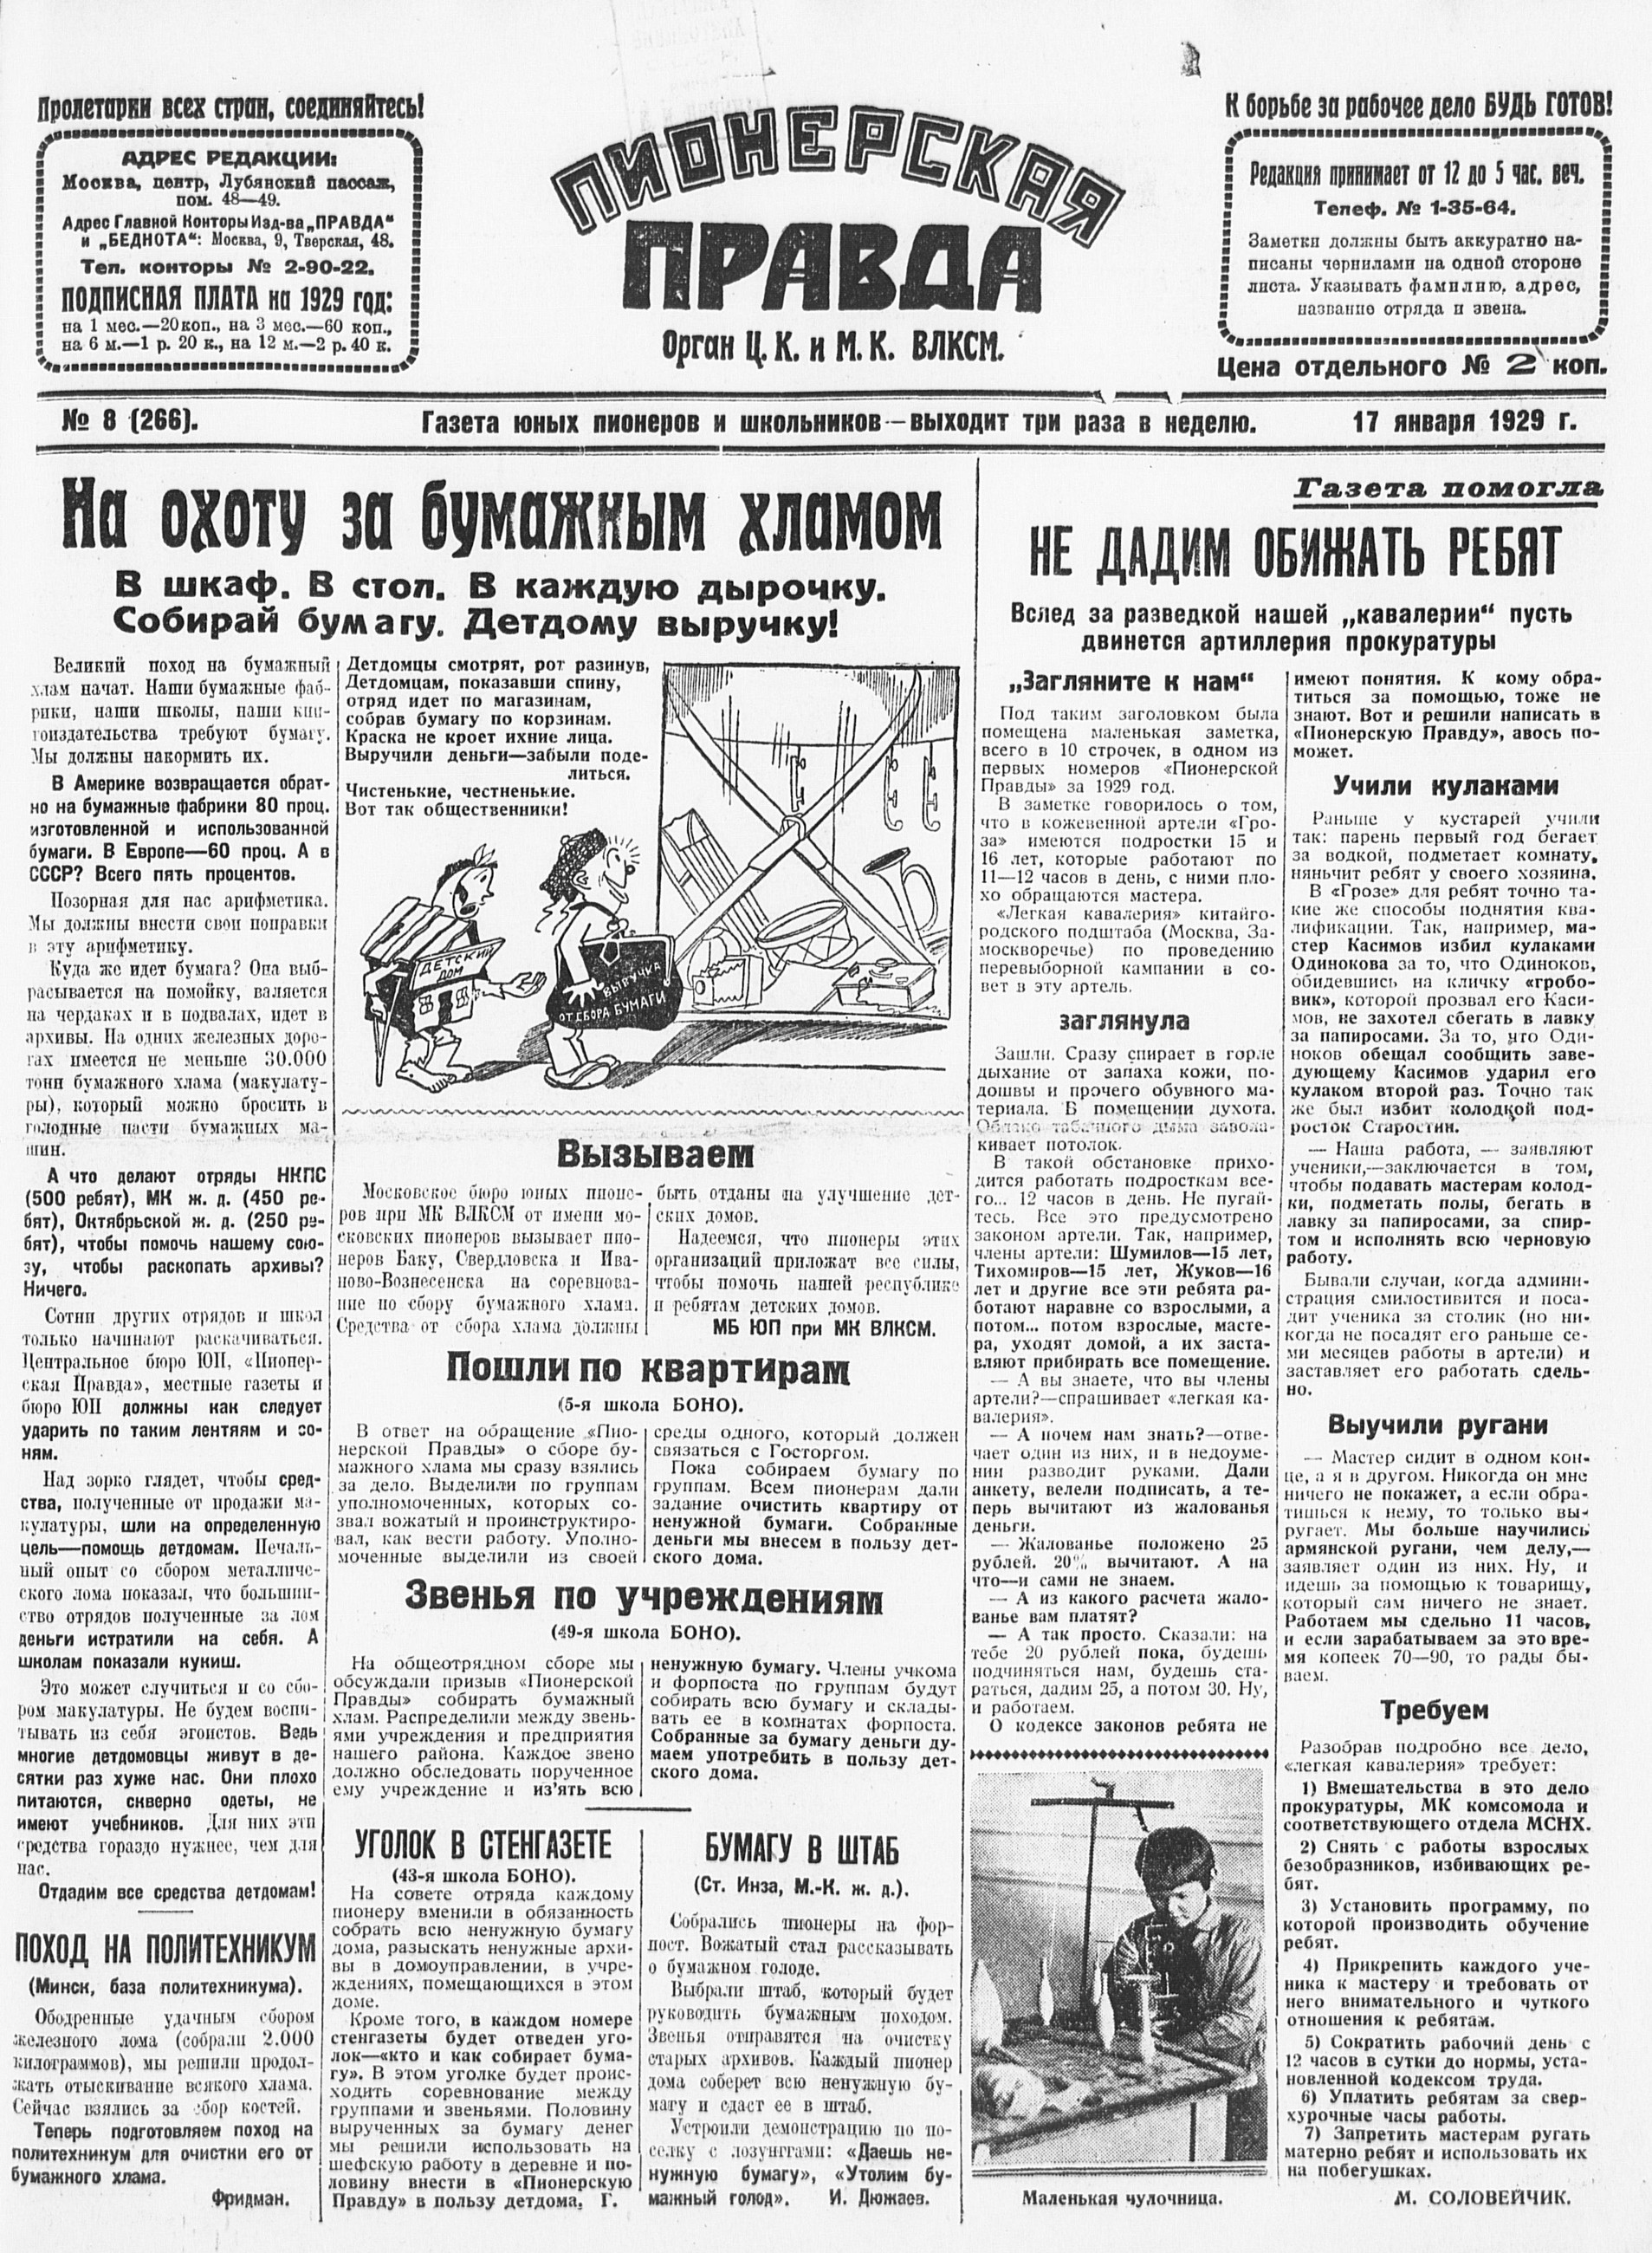 Пионерская правда. 1929. № 008 (266): Газета юных пионеров и школьников - выходит три раза в неделю - 1929